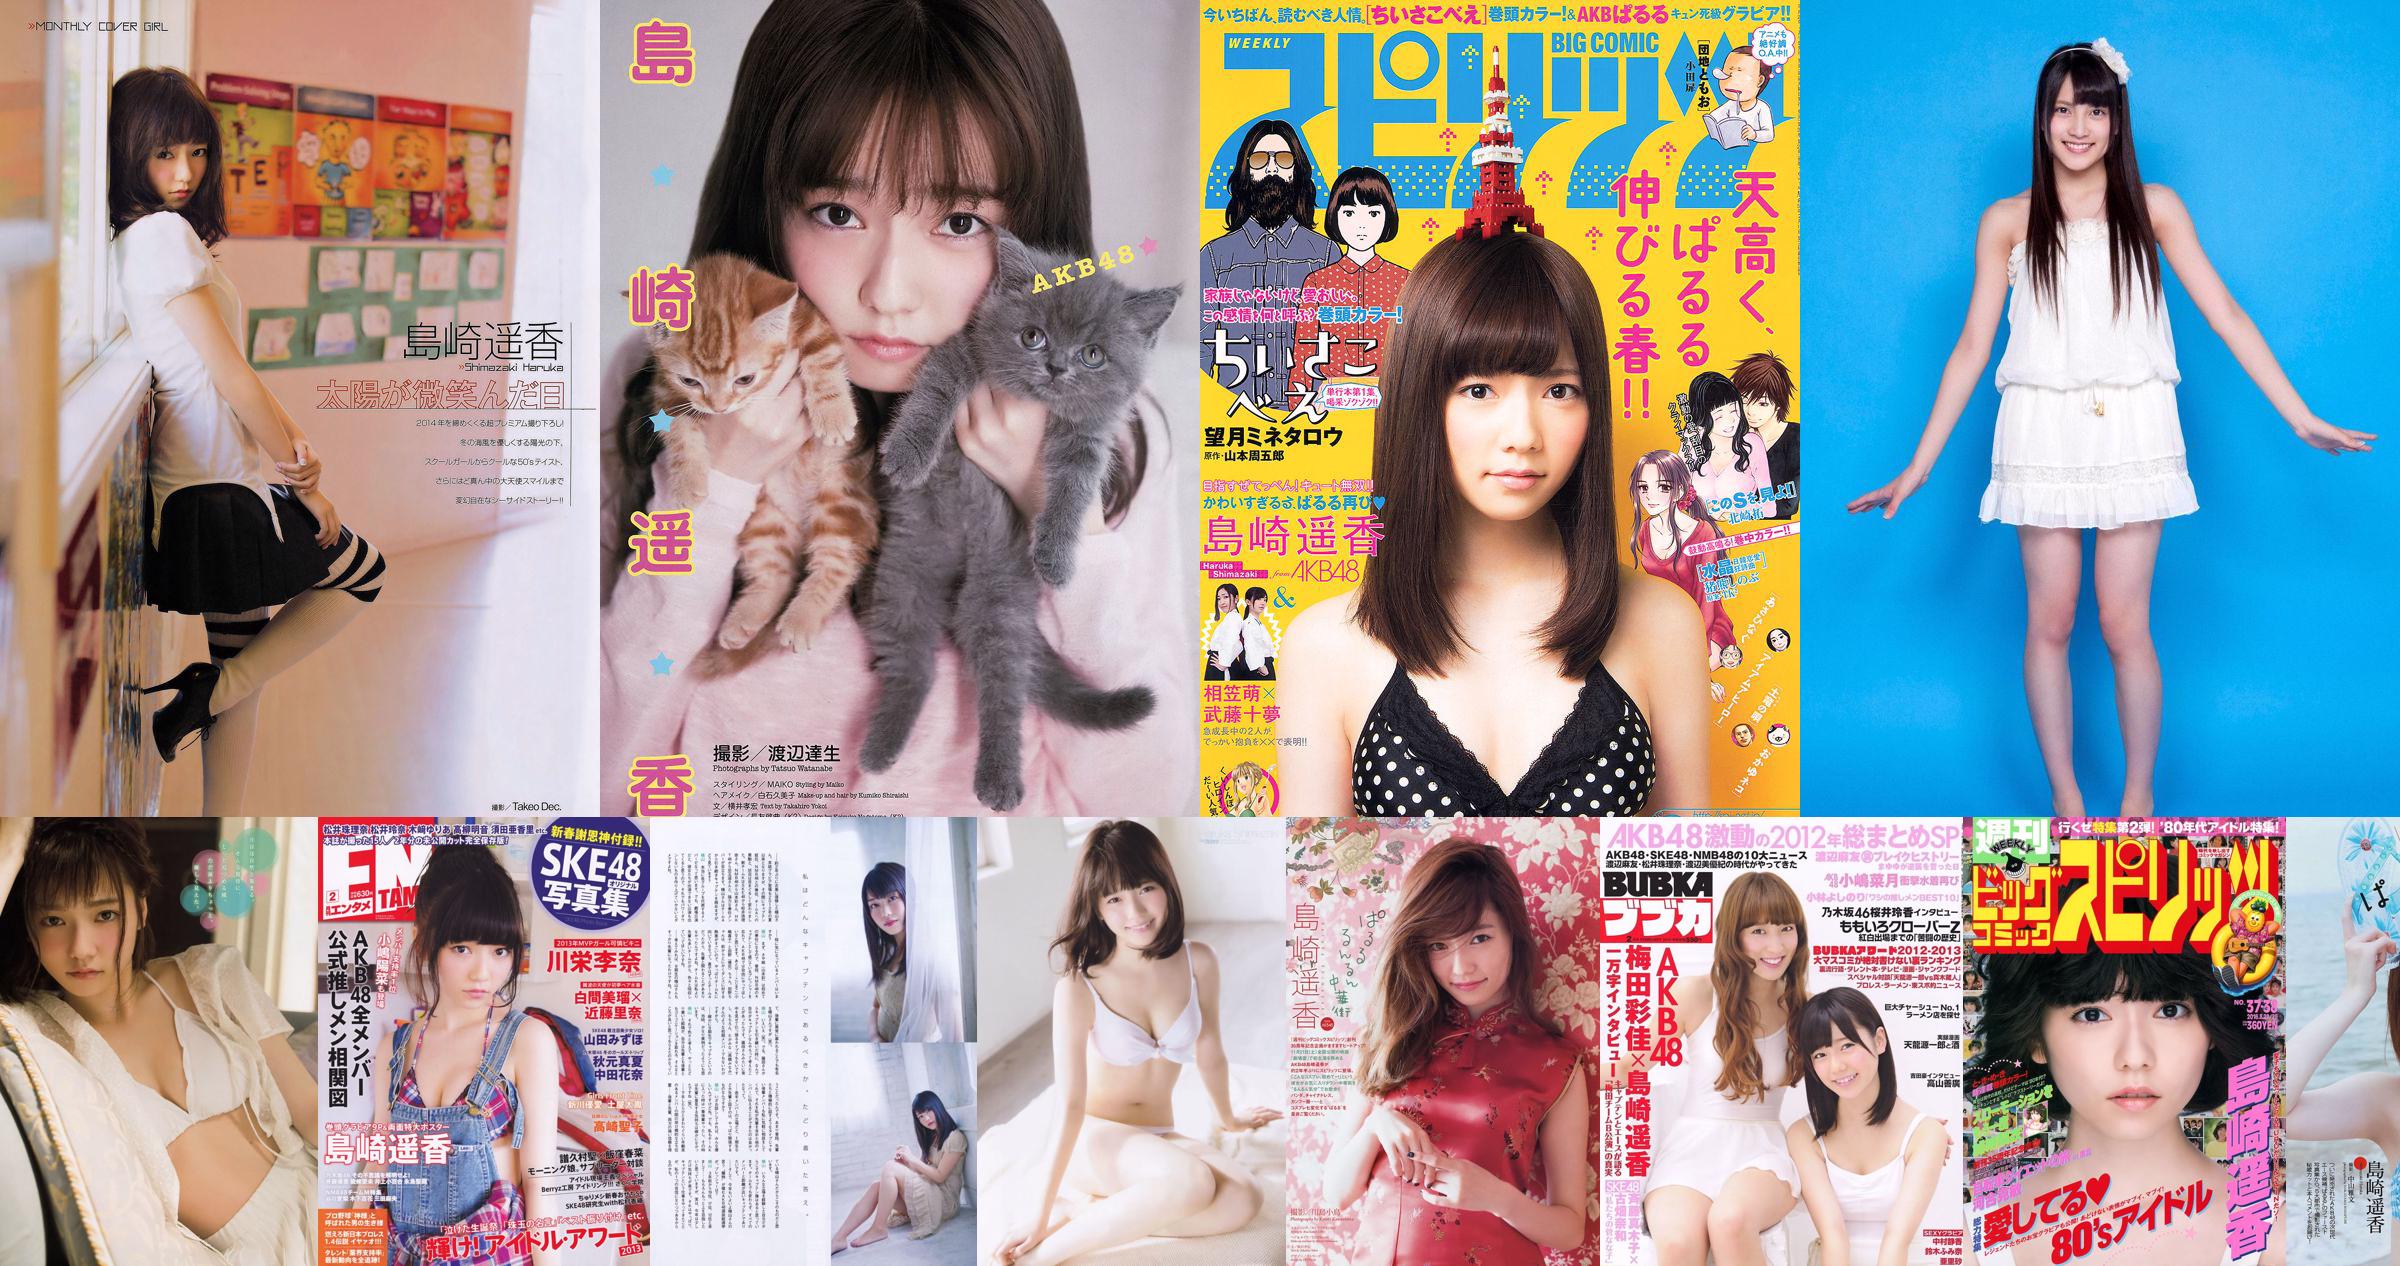 [Young Magazine] Photographie de Haruka Shimazaki 2014 n ° 51 No.5dd861 Page 2